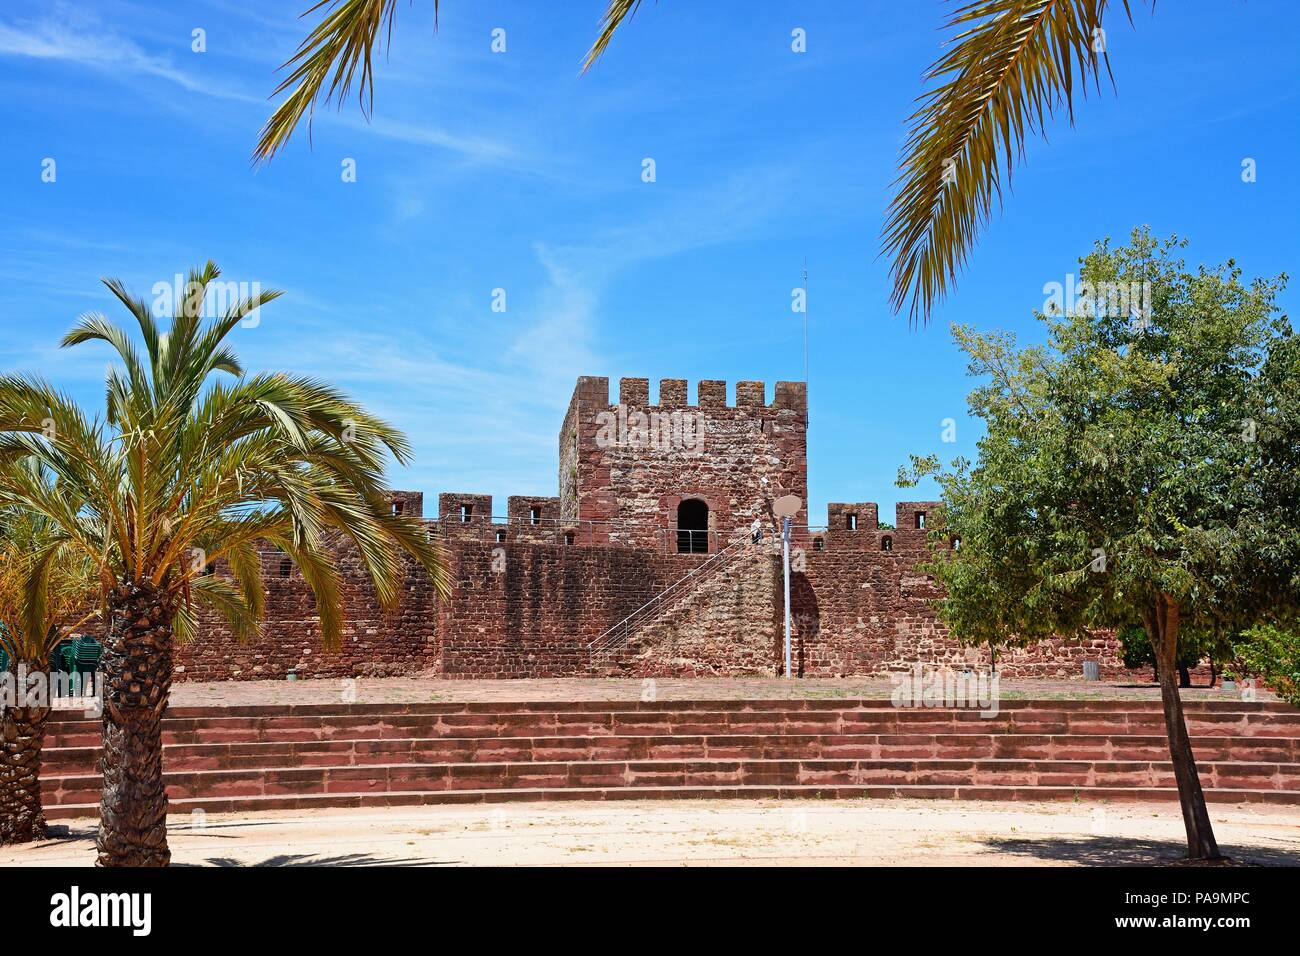 Palme e giardini paesaggistici entro il castello medievale con merli e torre al posteriore, Silves, del Portogallo, dell'Europa. Foto Stock